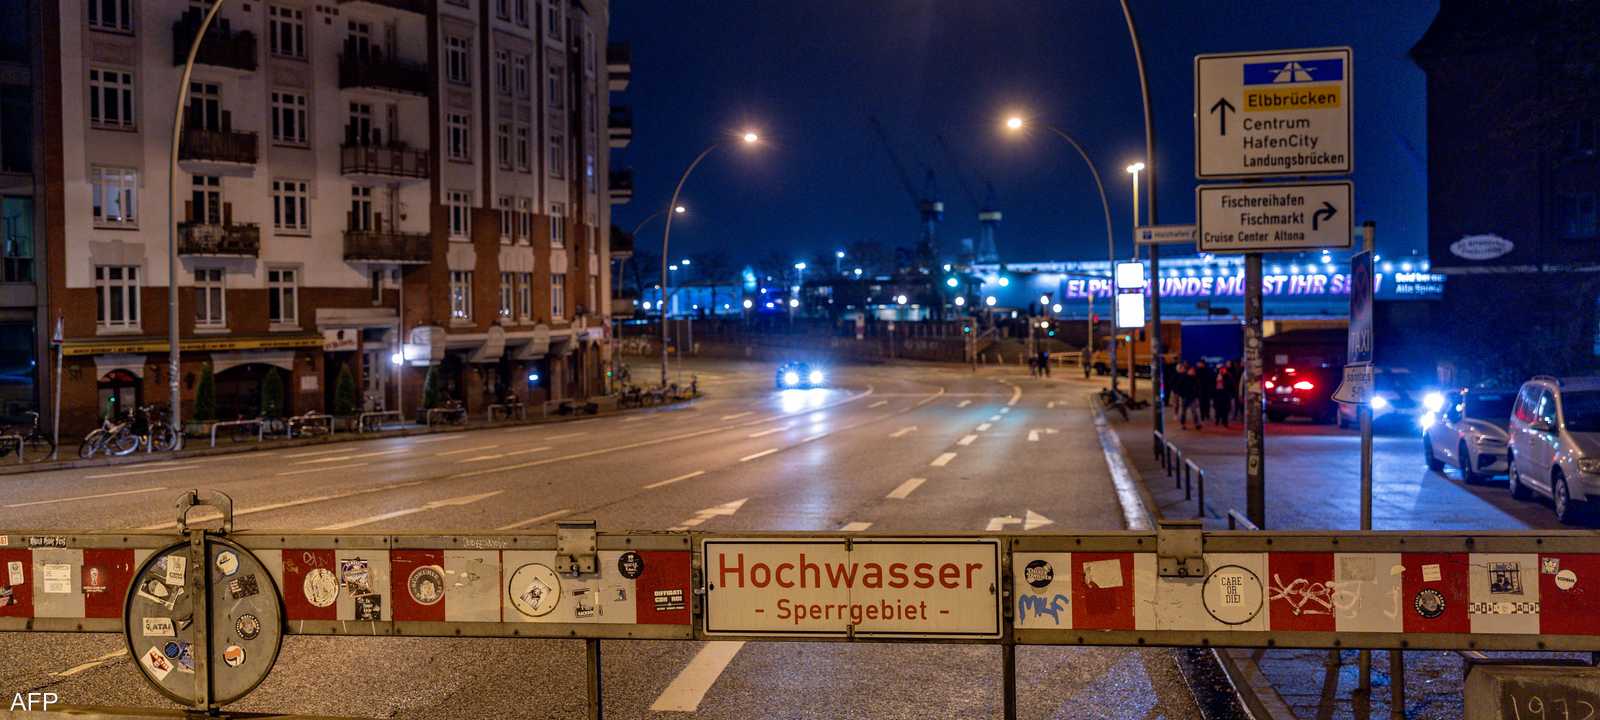 طريق مغلق في هامبورغ بسبب الفيضانات